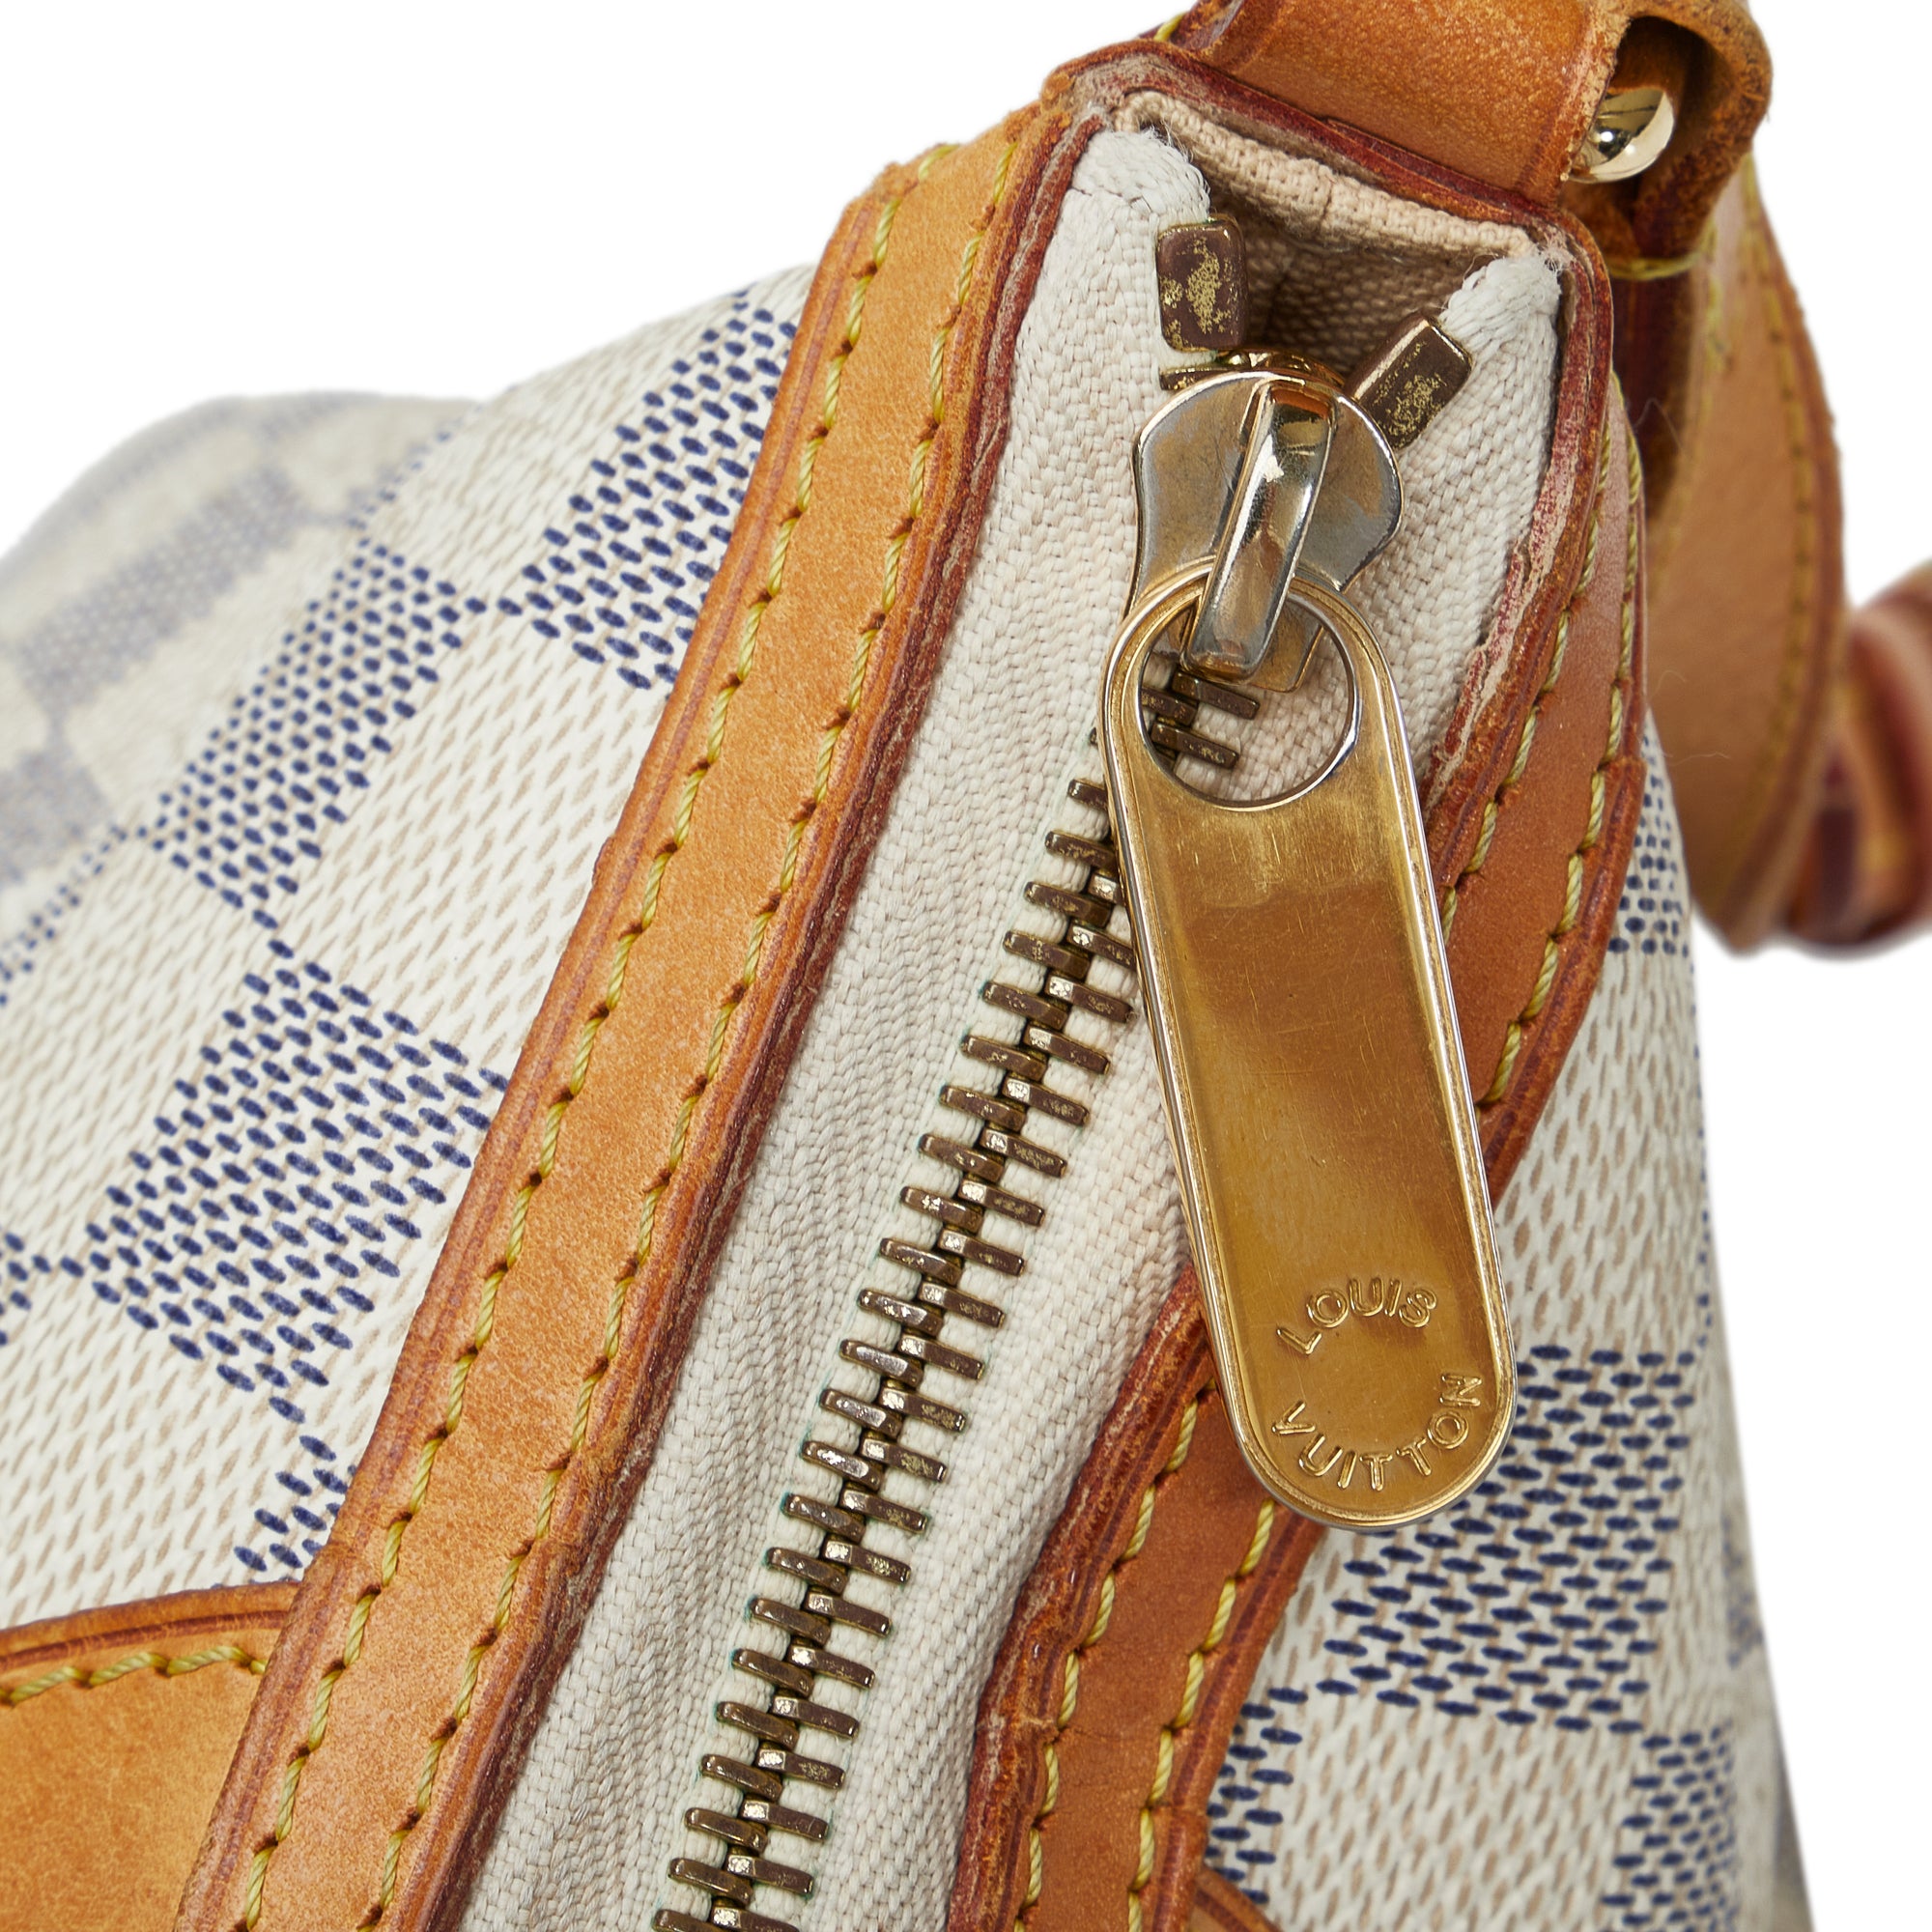 Louis Vuitton Damier Azur Siracusa MM - White Shoulder Bags